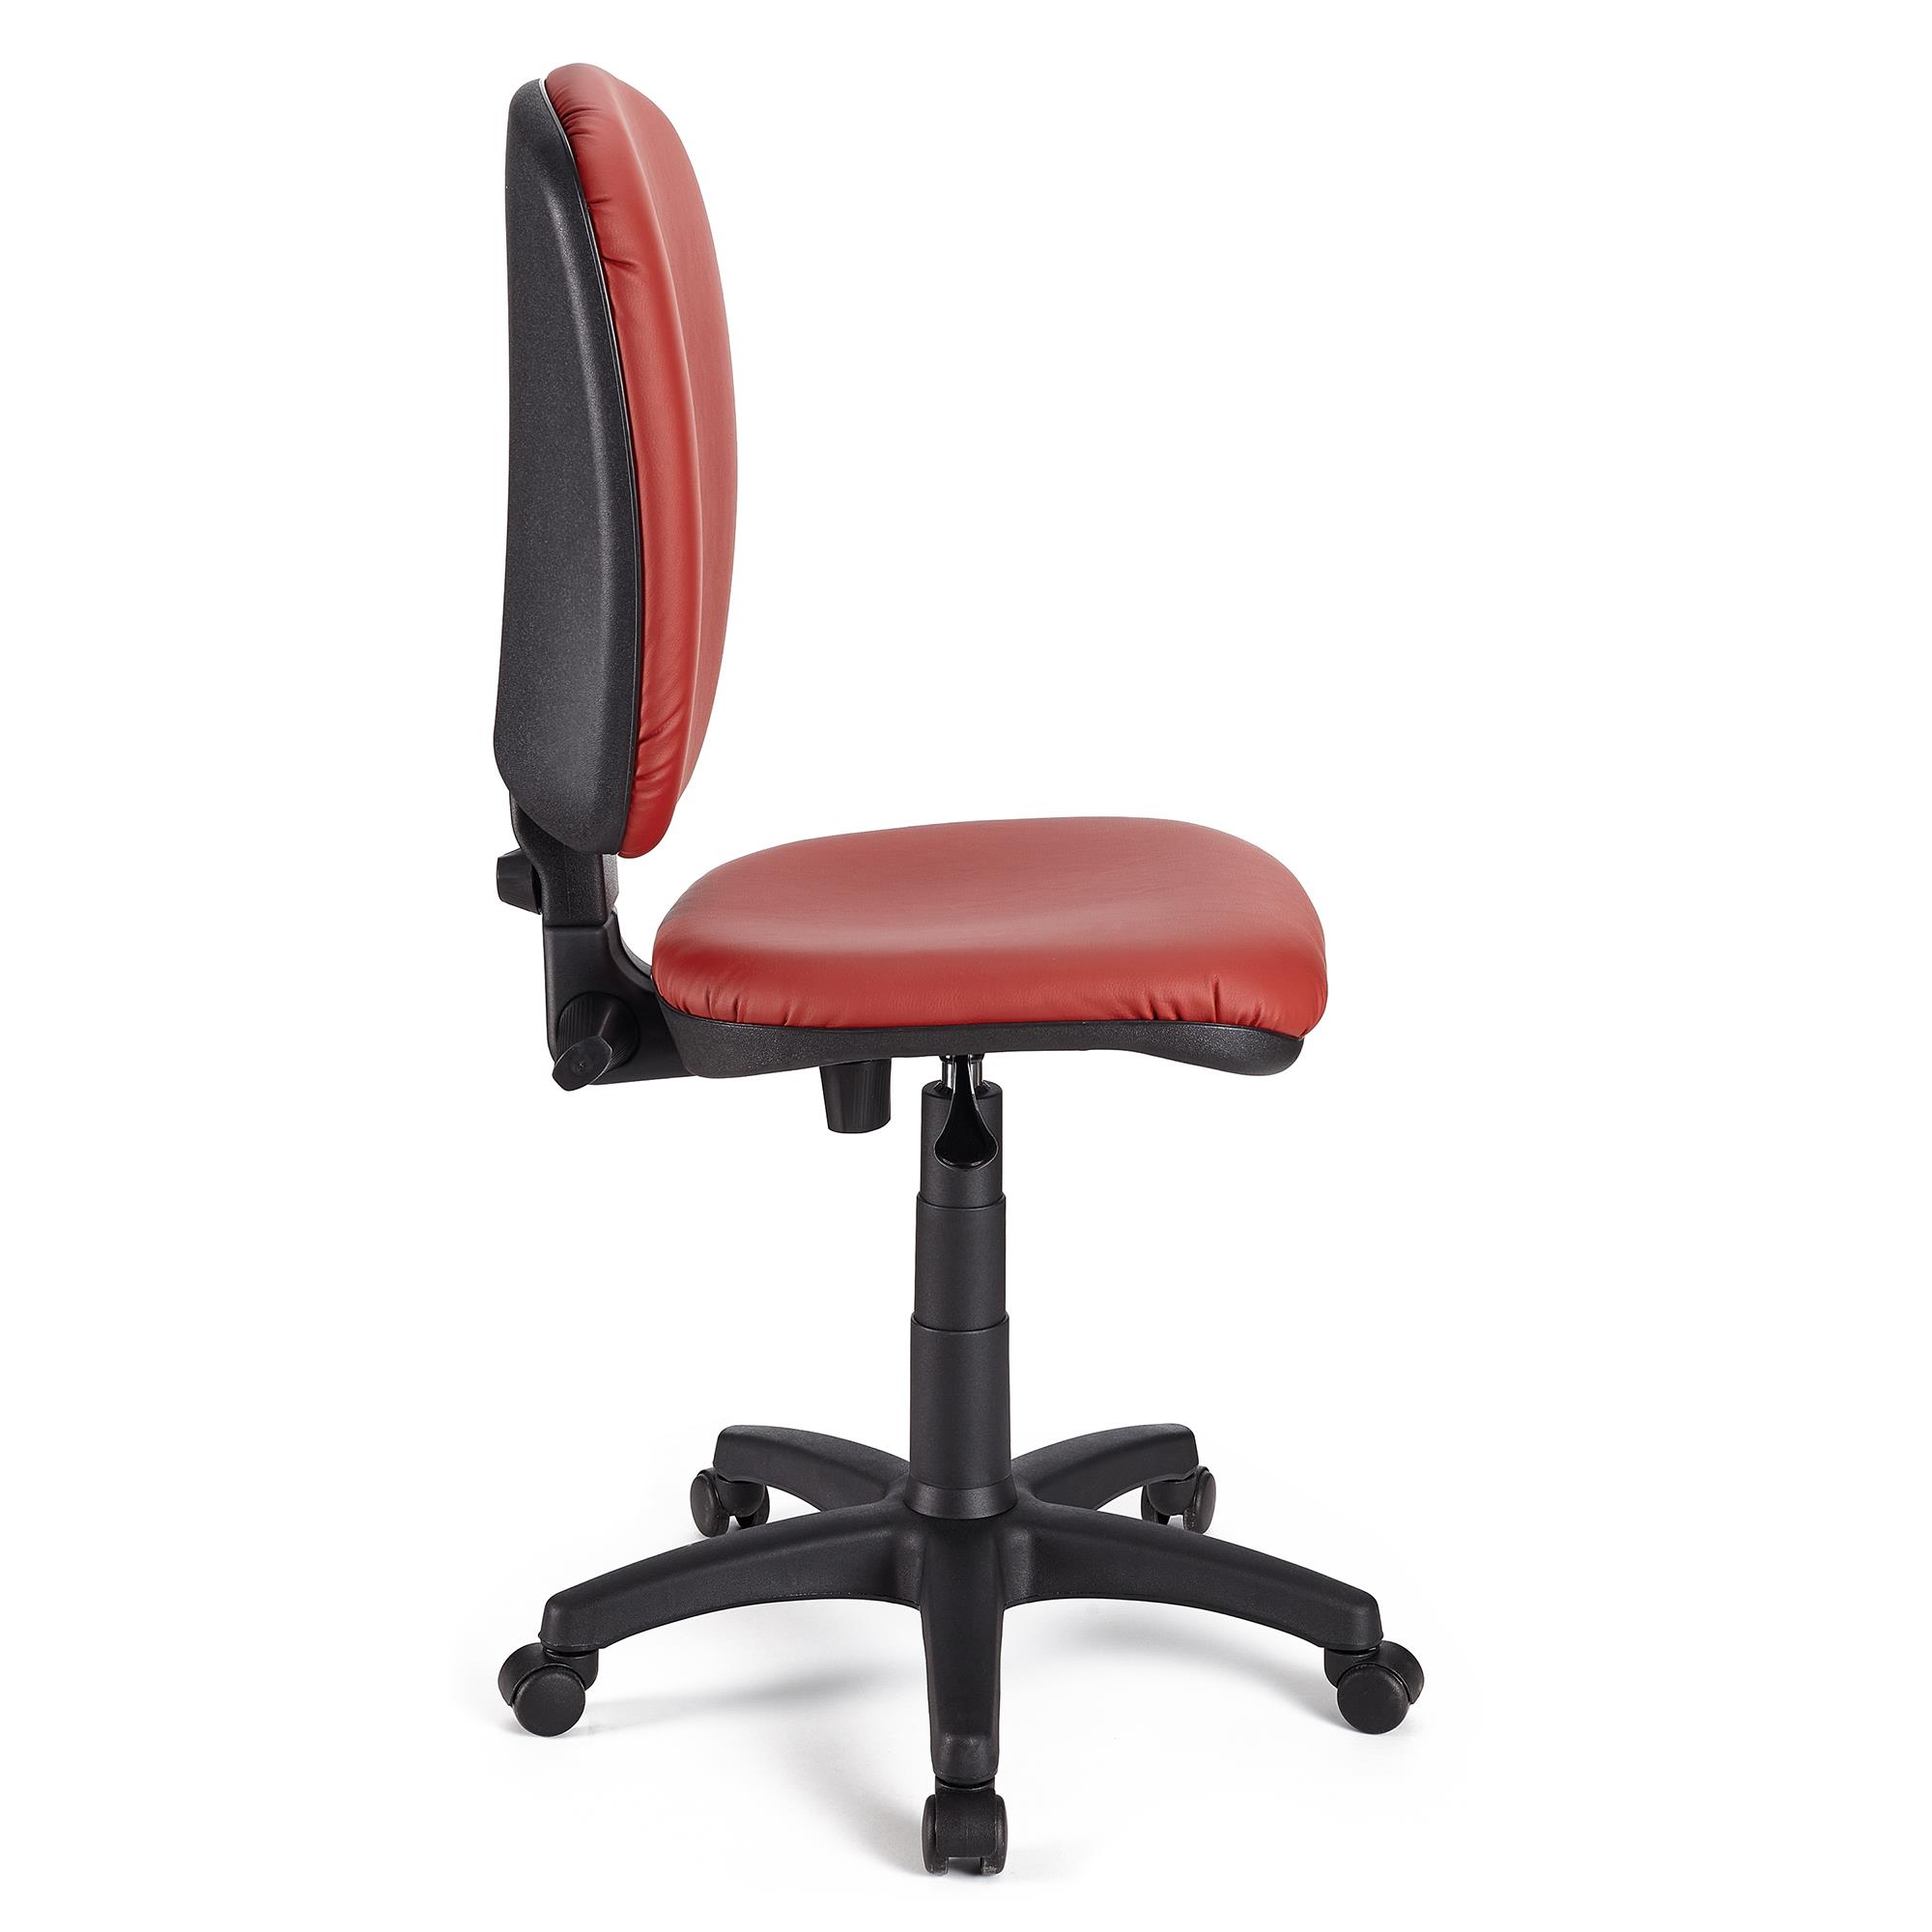 Por qué elegir una silla de escritorio sin brazos?